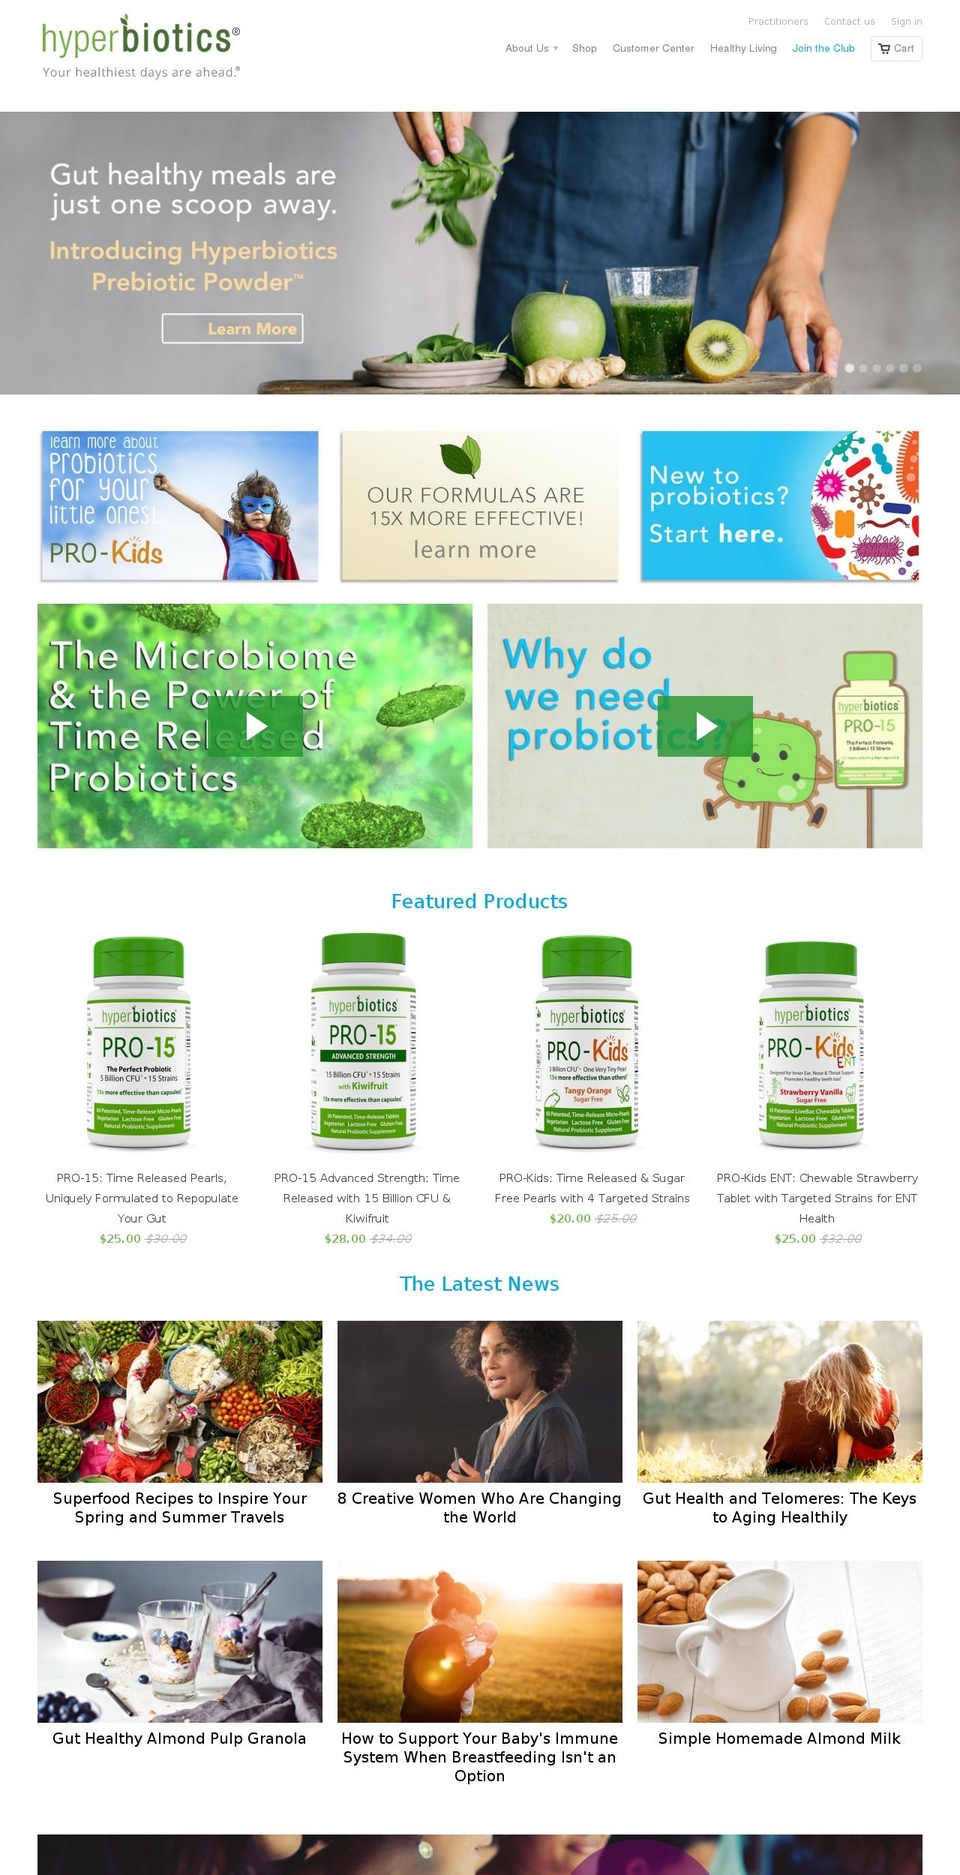 hyperbiotics.com shopify website screenshot